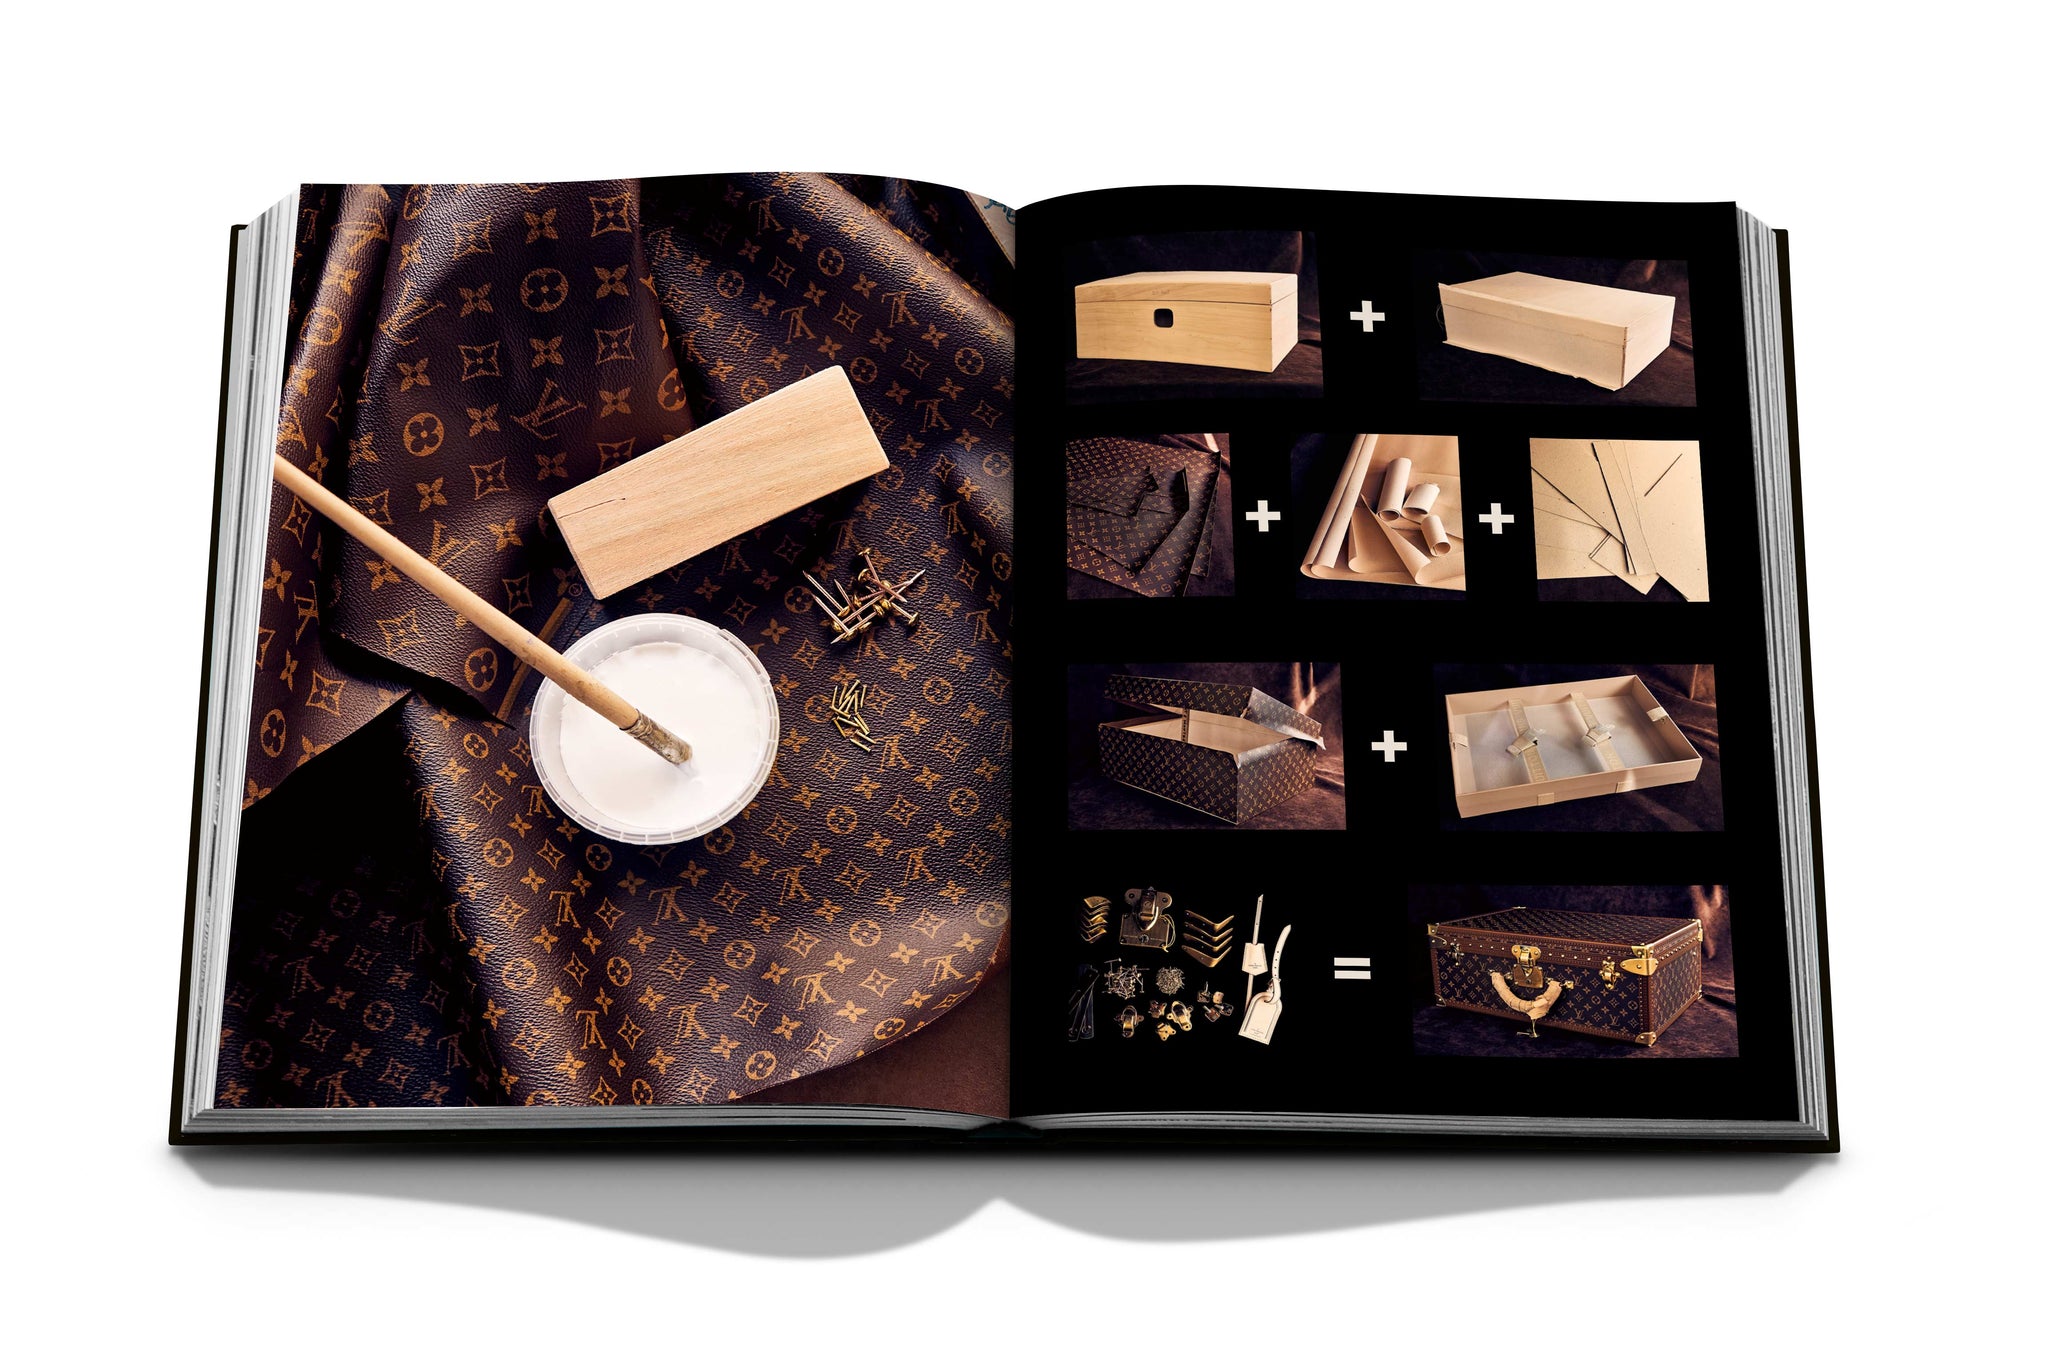 Manufactures, el libro que devela los secretos de Louis Vuitton